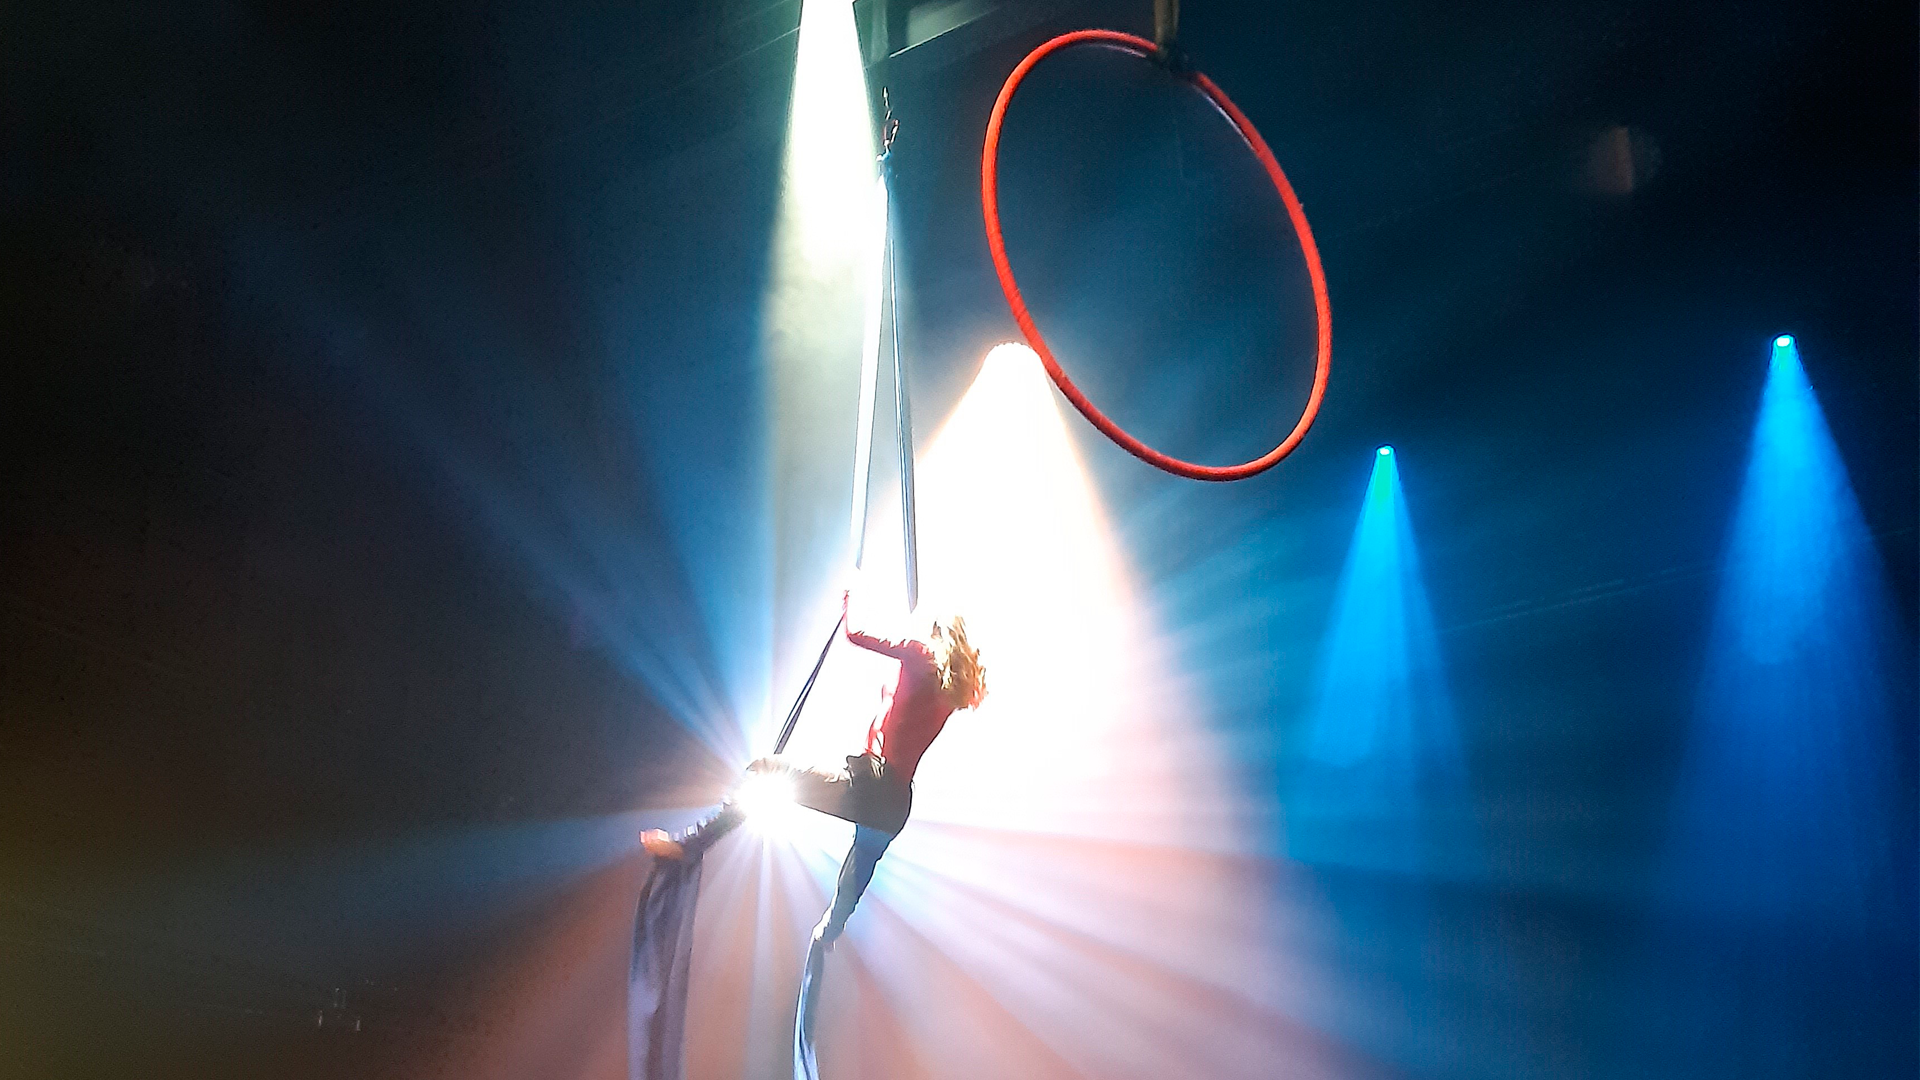 Oulun taidekoulun sirkusryhmän oppilas esittämässä opinnäytetyötä